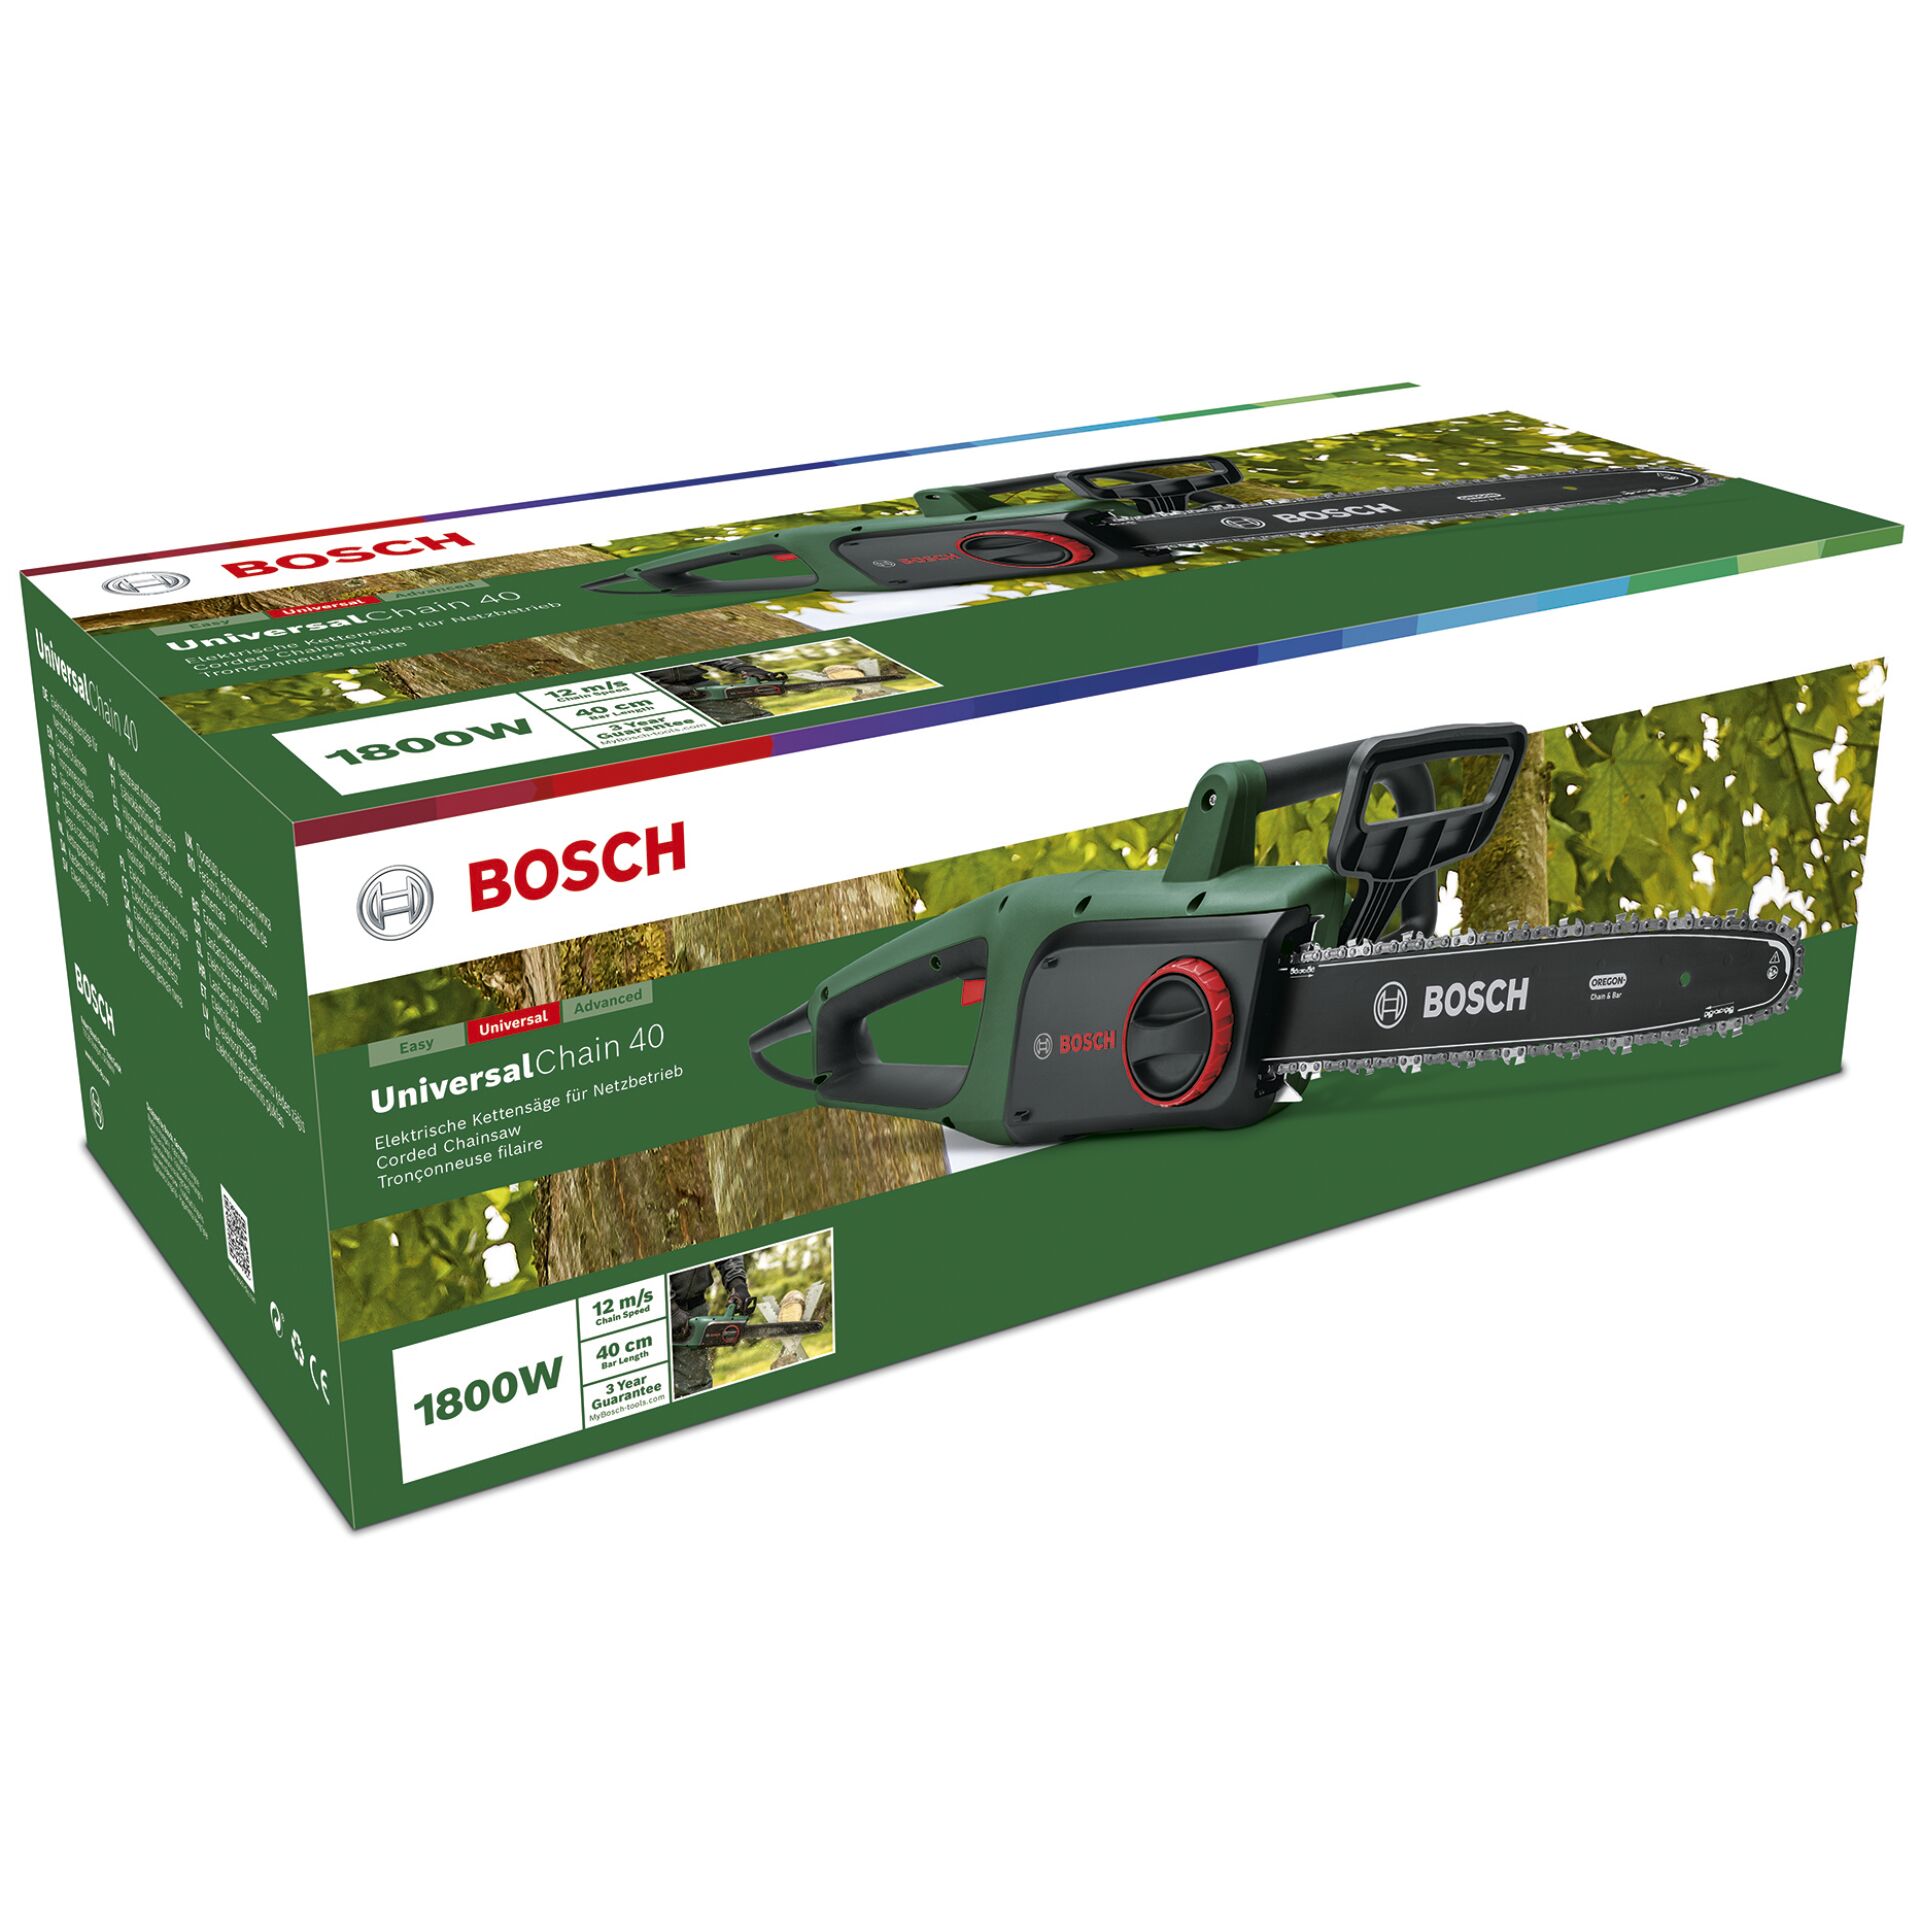 Bosch UniversalChain 40 Electric Chain Saw